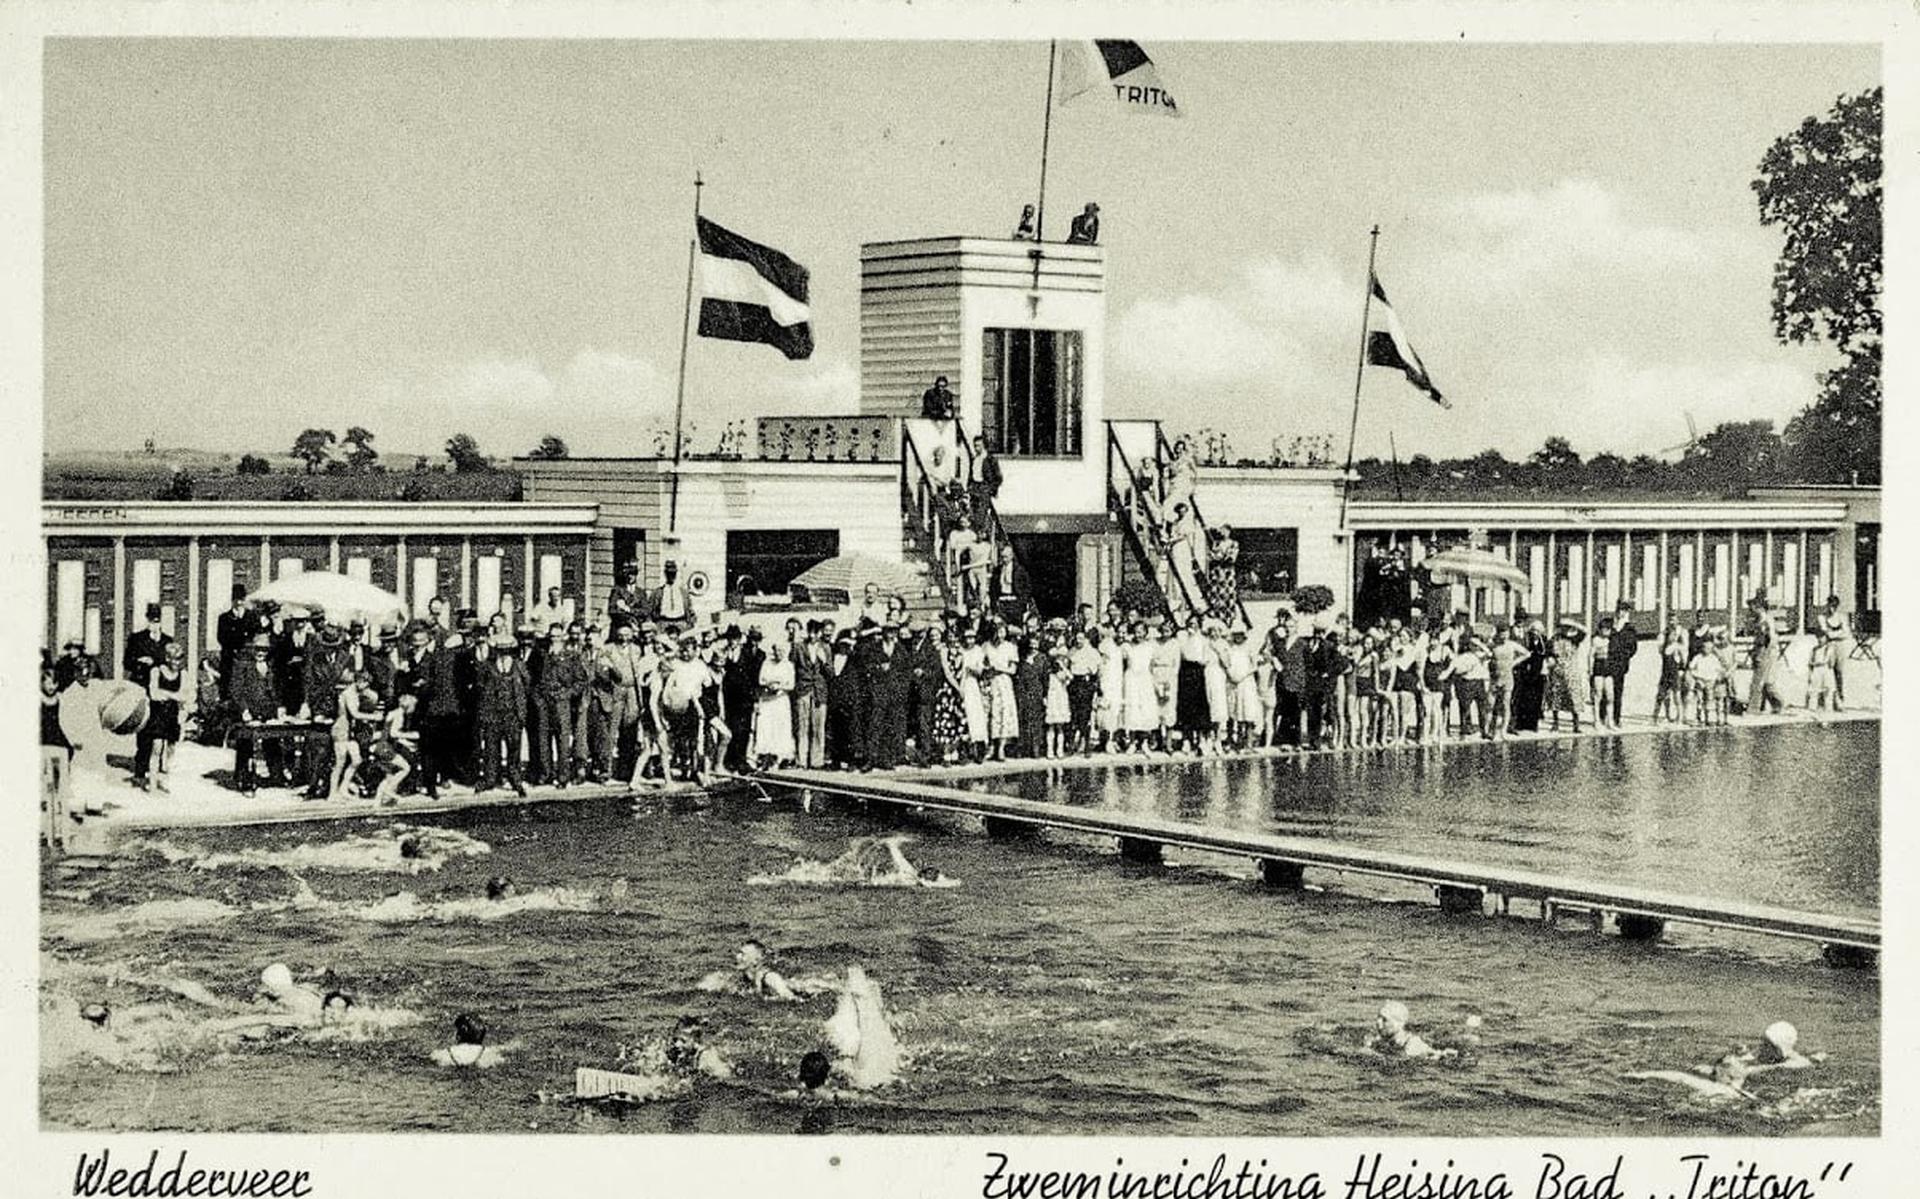 Het zwembad Triton werd in de jaren 30 van de vorige eeuw geopend.